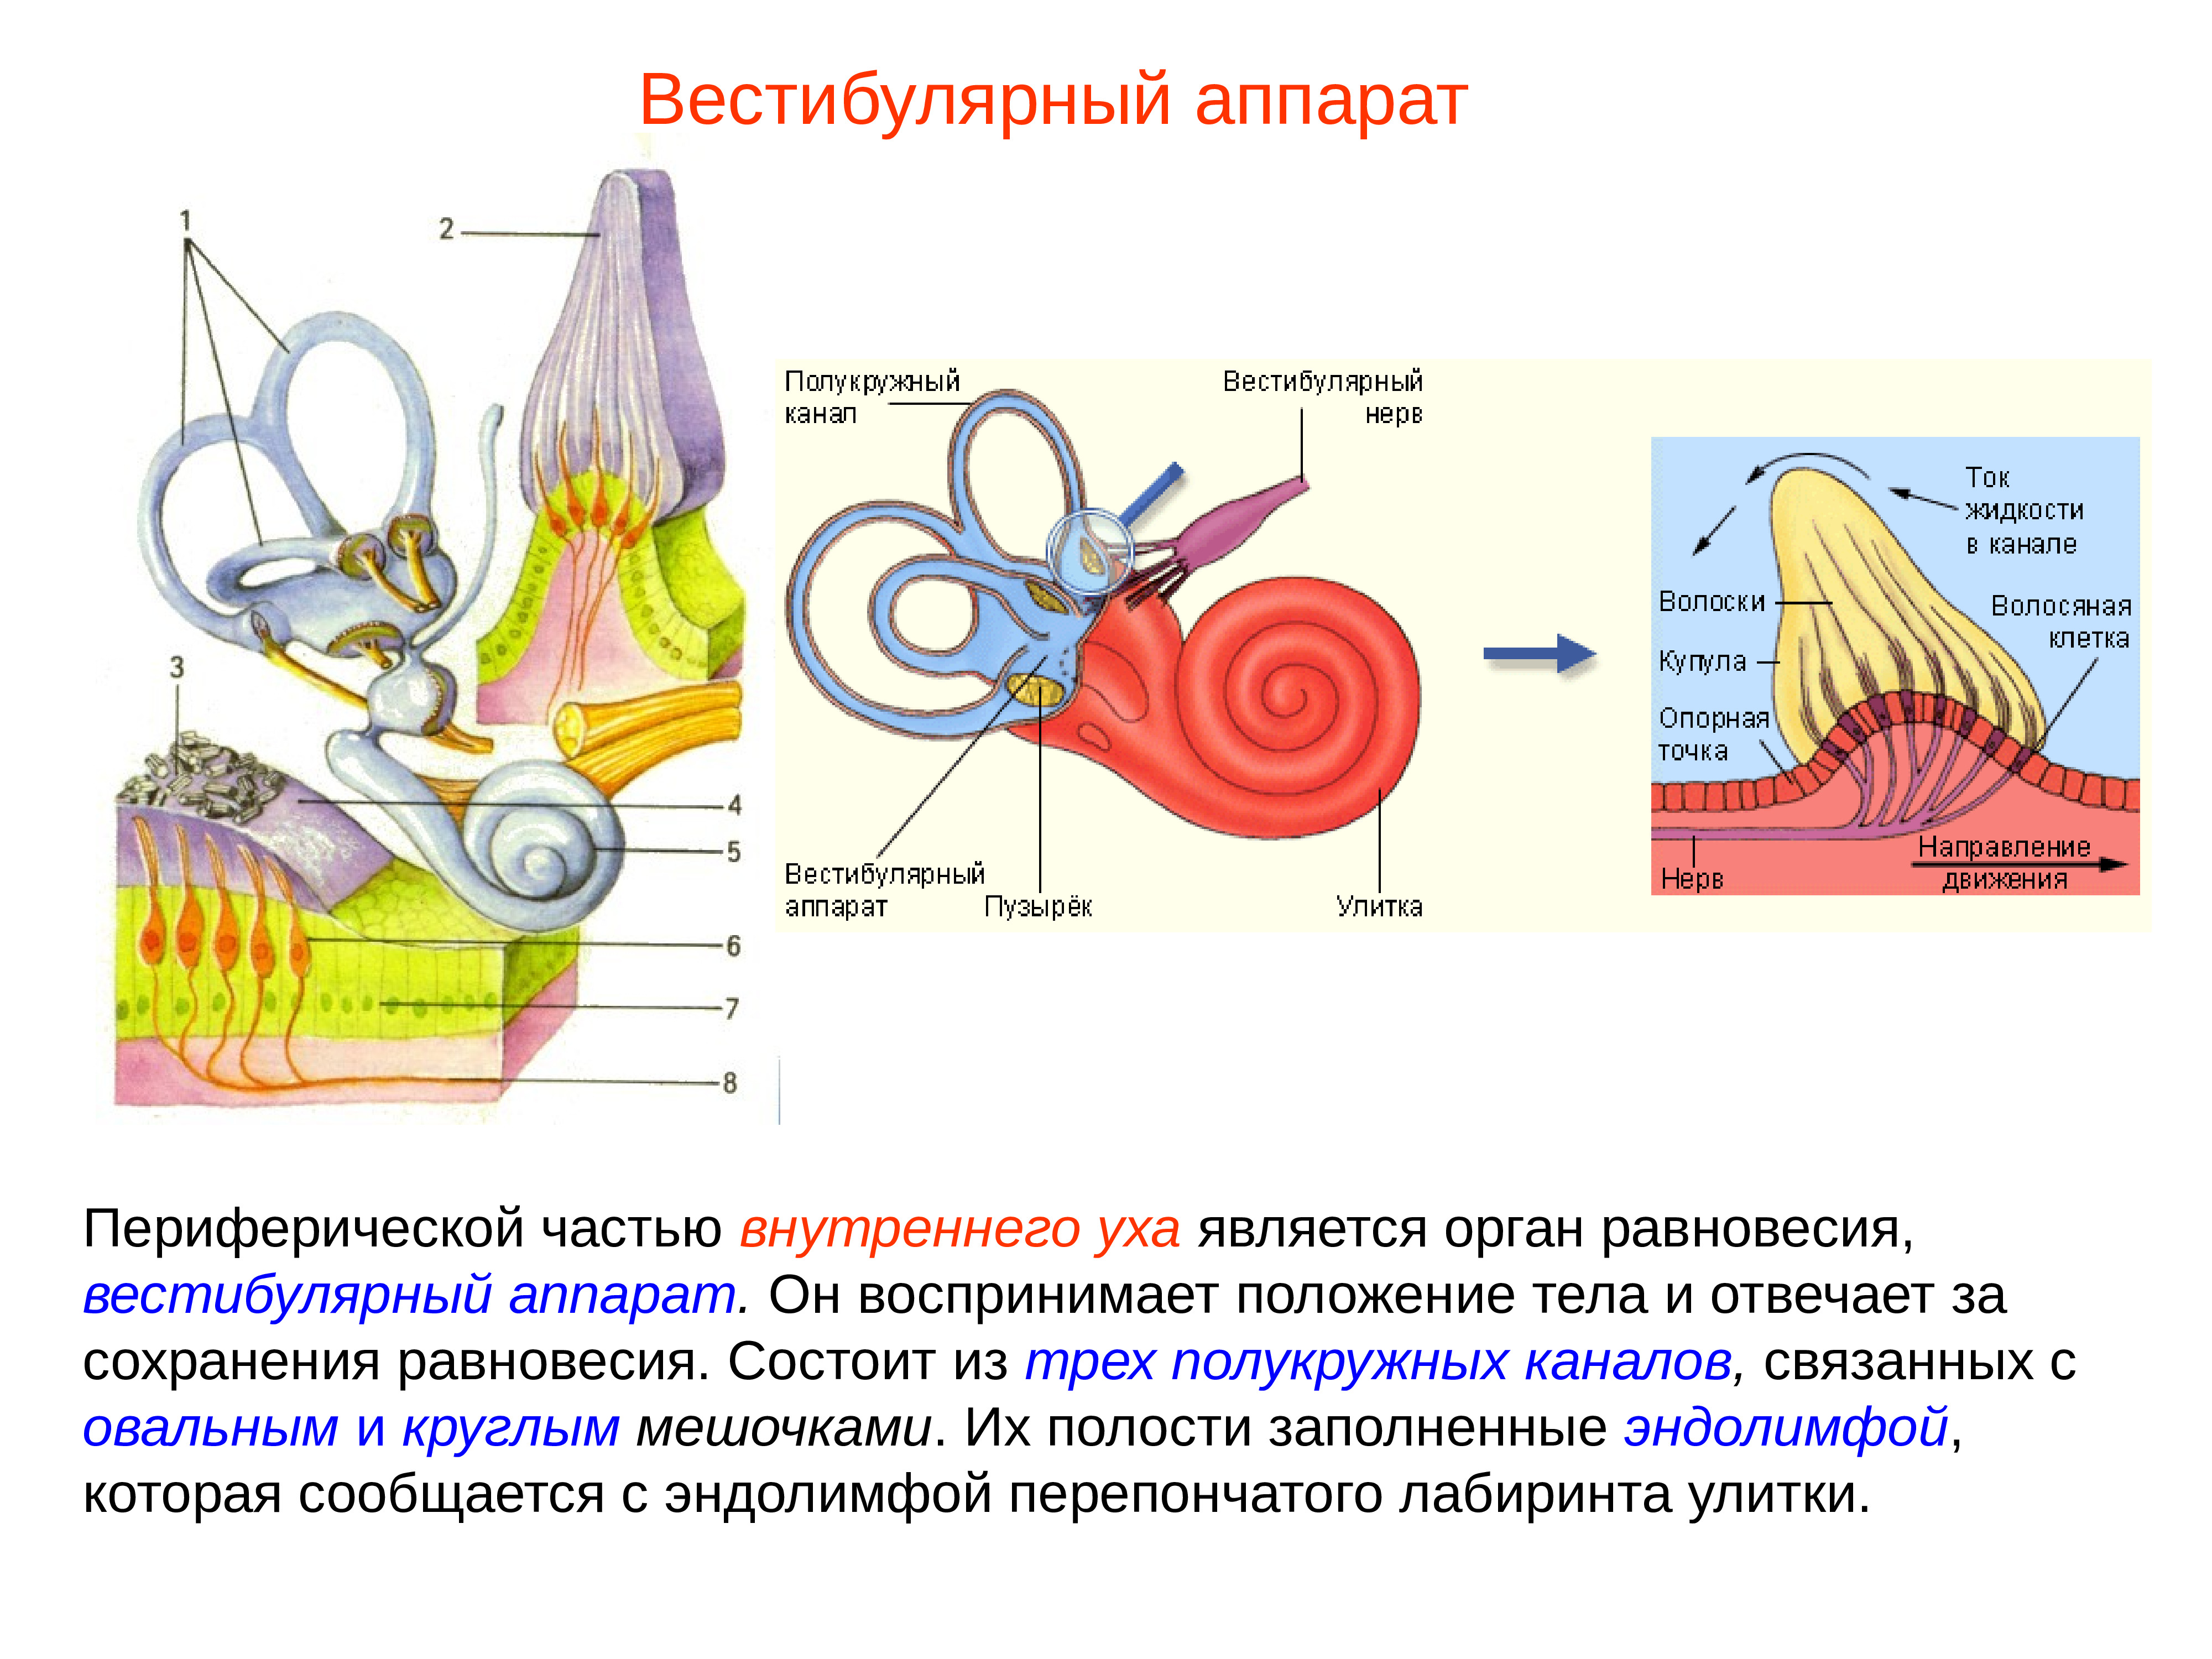 Орган равновесия строение и функции. Внутреннее ухо вестибулярный анализатор анатомия. Строение строение вестибулярного аппарата. Полукружные каналы внутреннего уха анатомия. Схема периферического отдела вестибулярного анализатора.